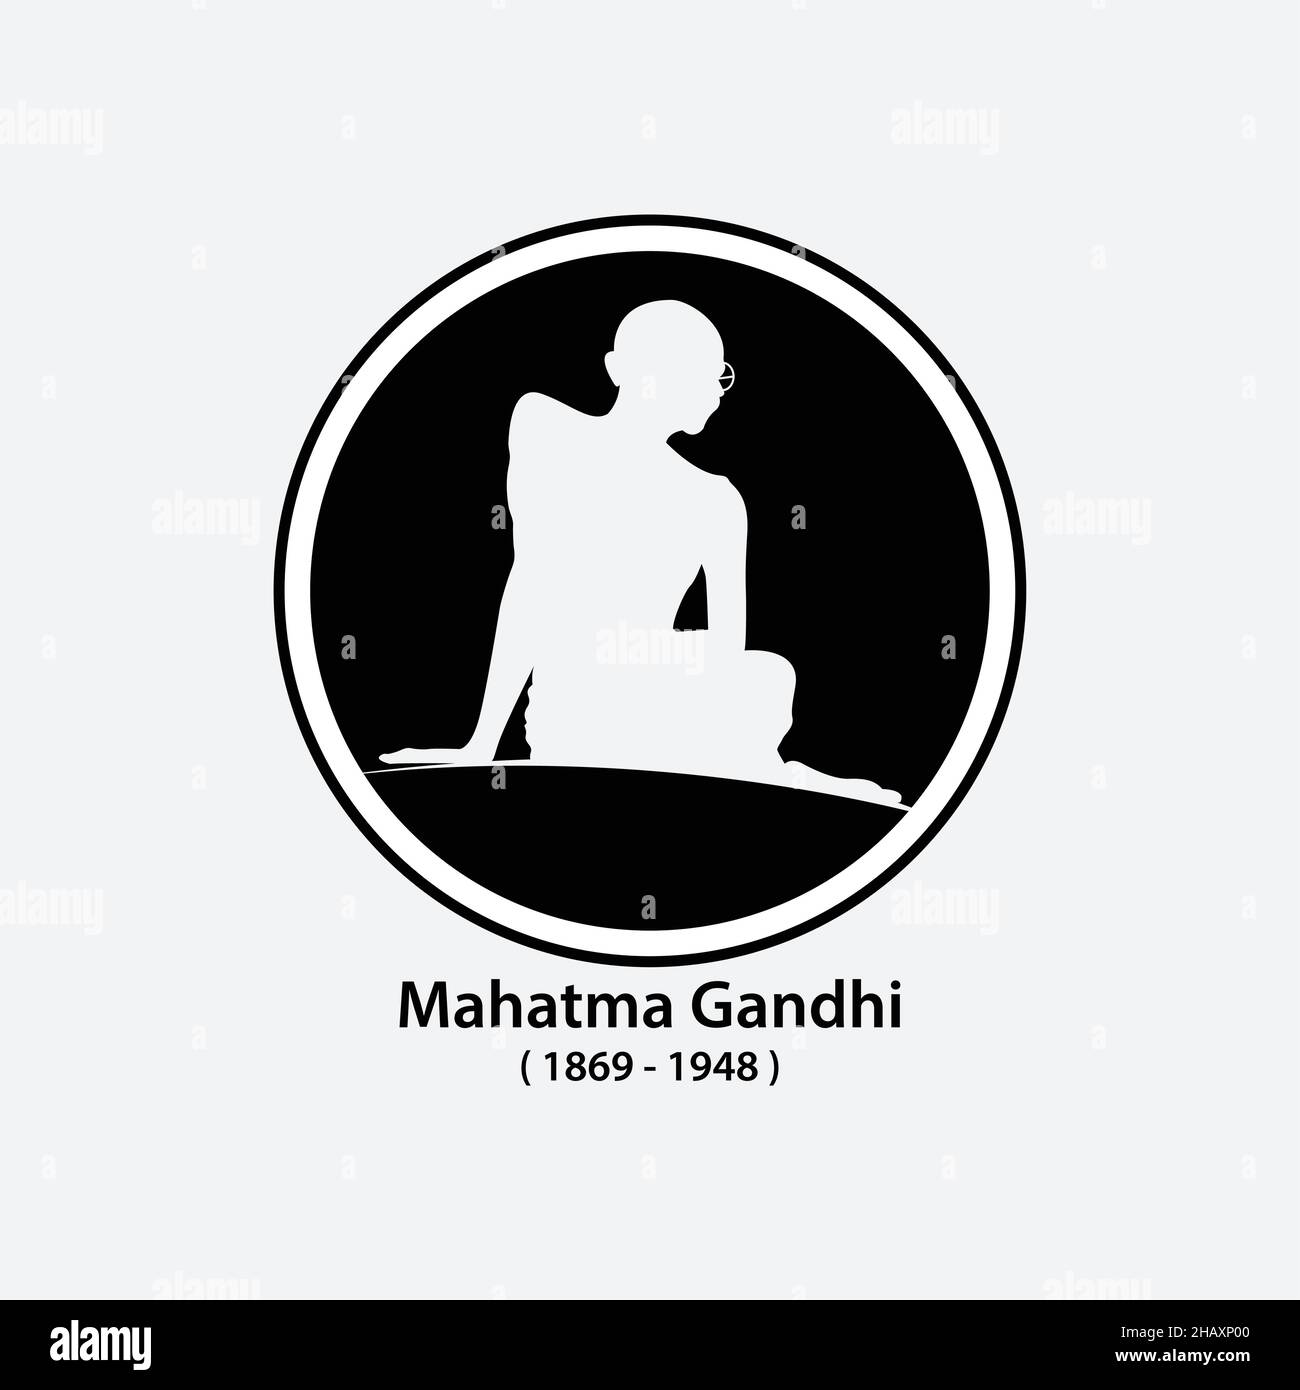 Il padre della nazione di Gandhi.India. Mahatma Gandhi immagine vettoriale, leader del movimento per l'indipendenza indiana contro il governo britannico. Il senso più popolare Illustrazione Vettoriale